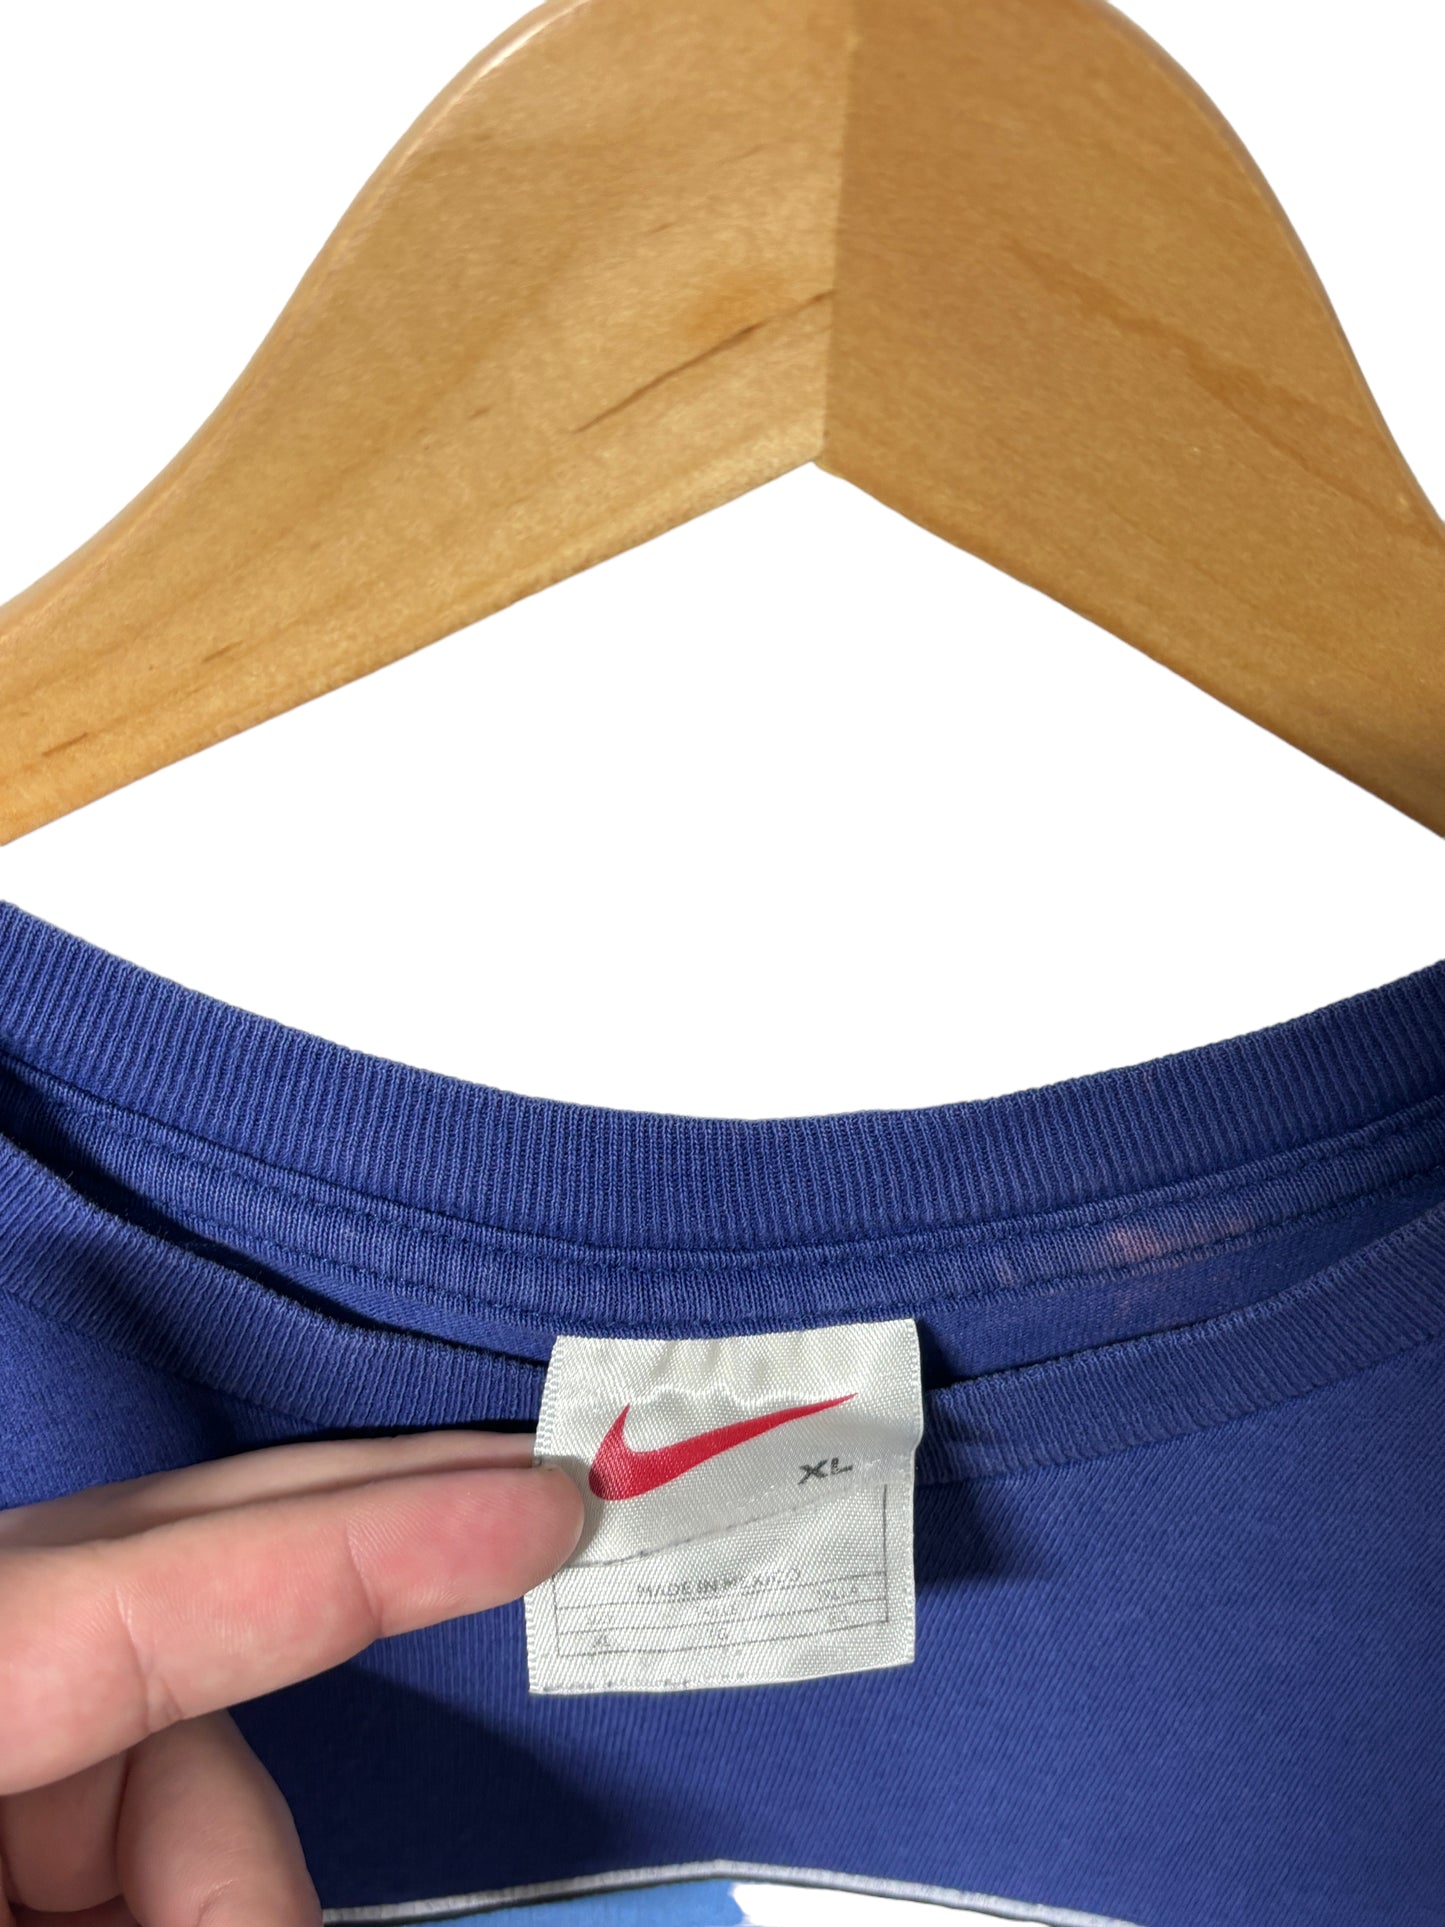 Vintage 90's Nike Logo Distressed Long Sleeve Shirt Size Large